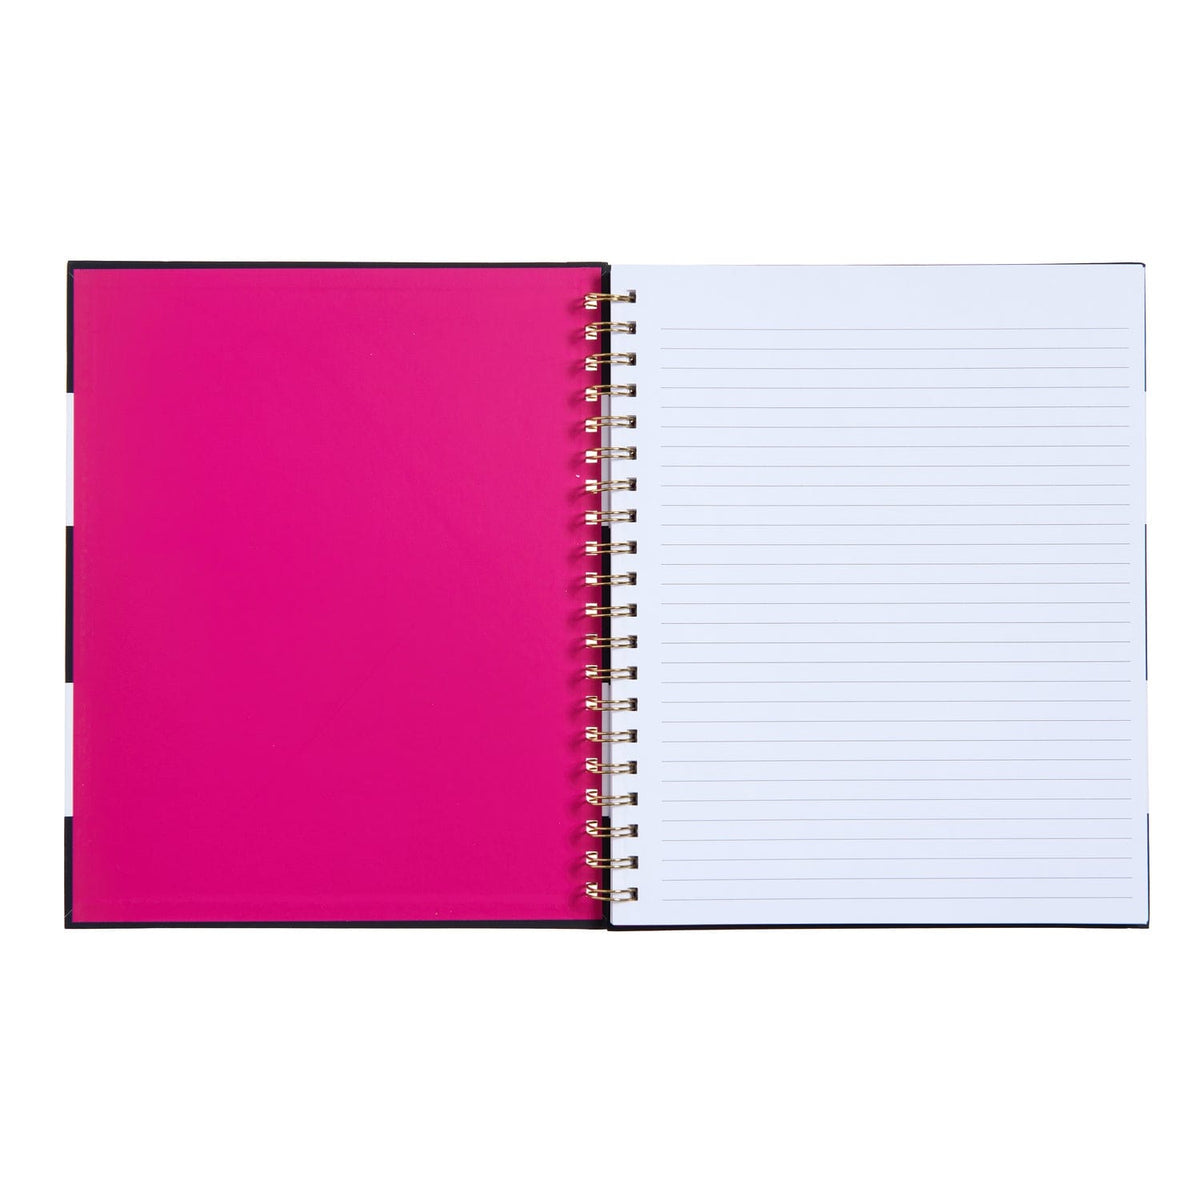 Black and White Stripe Journal Gartner Studios Notebooks 47343